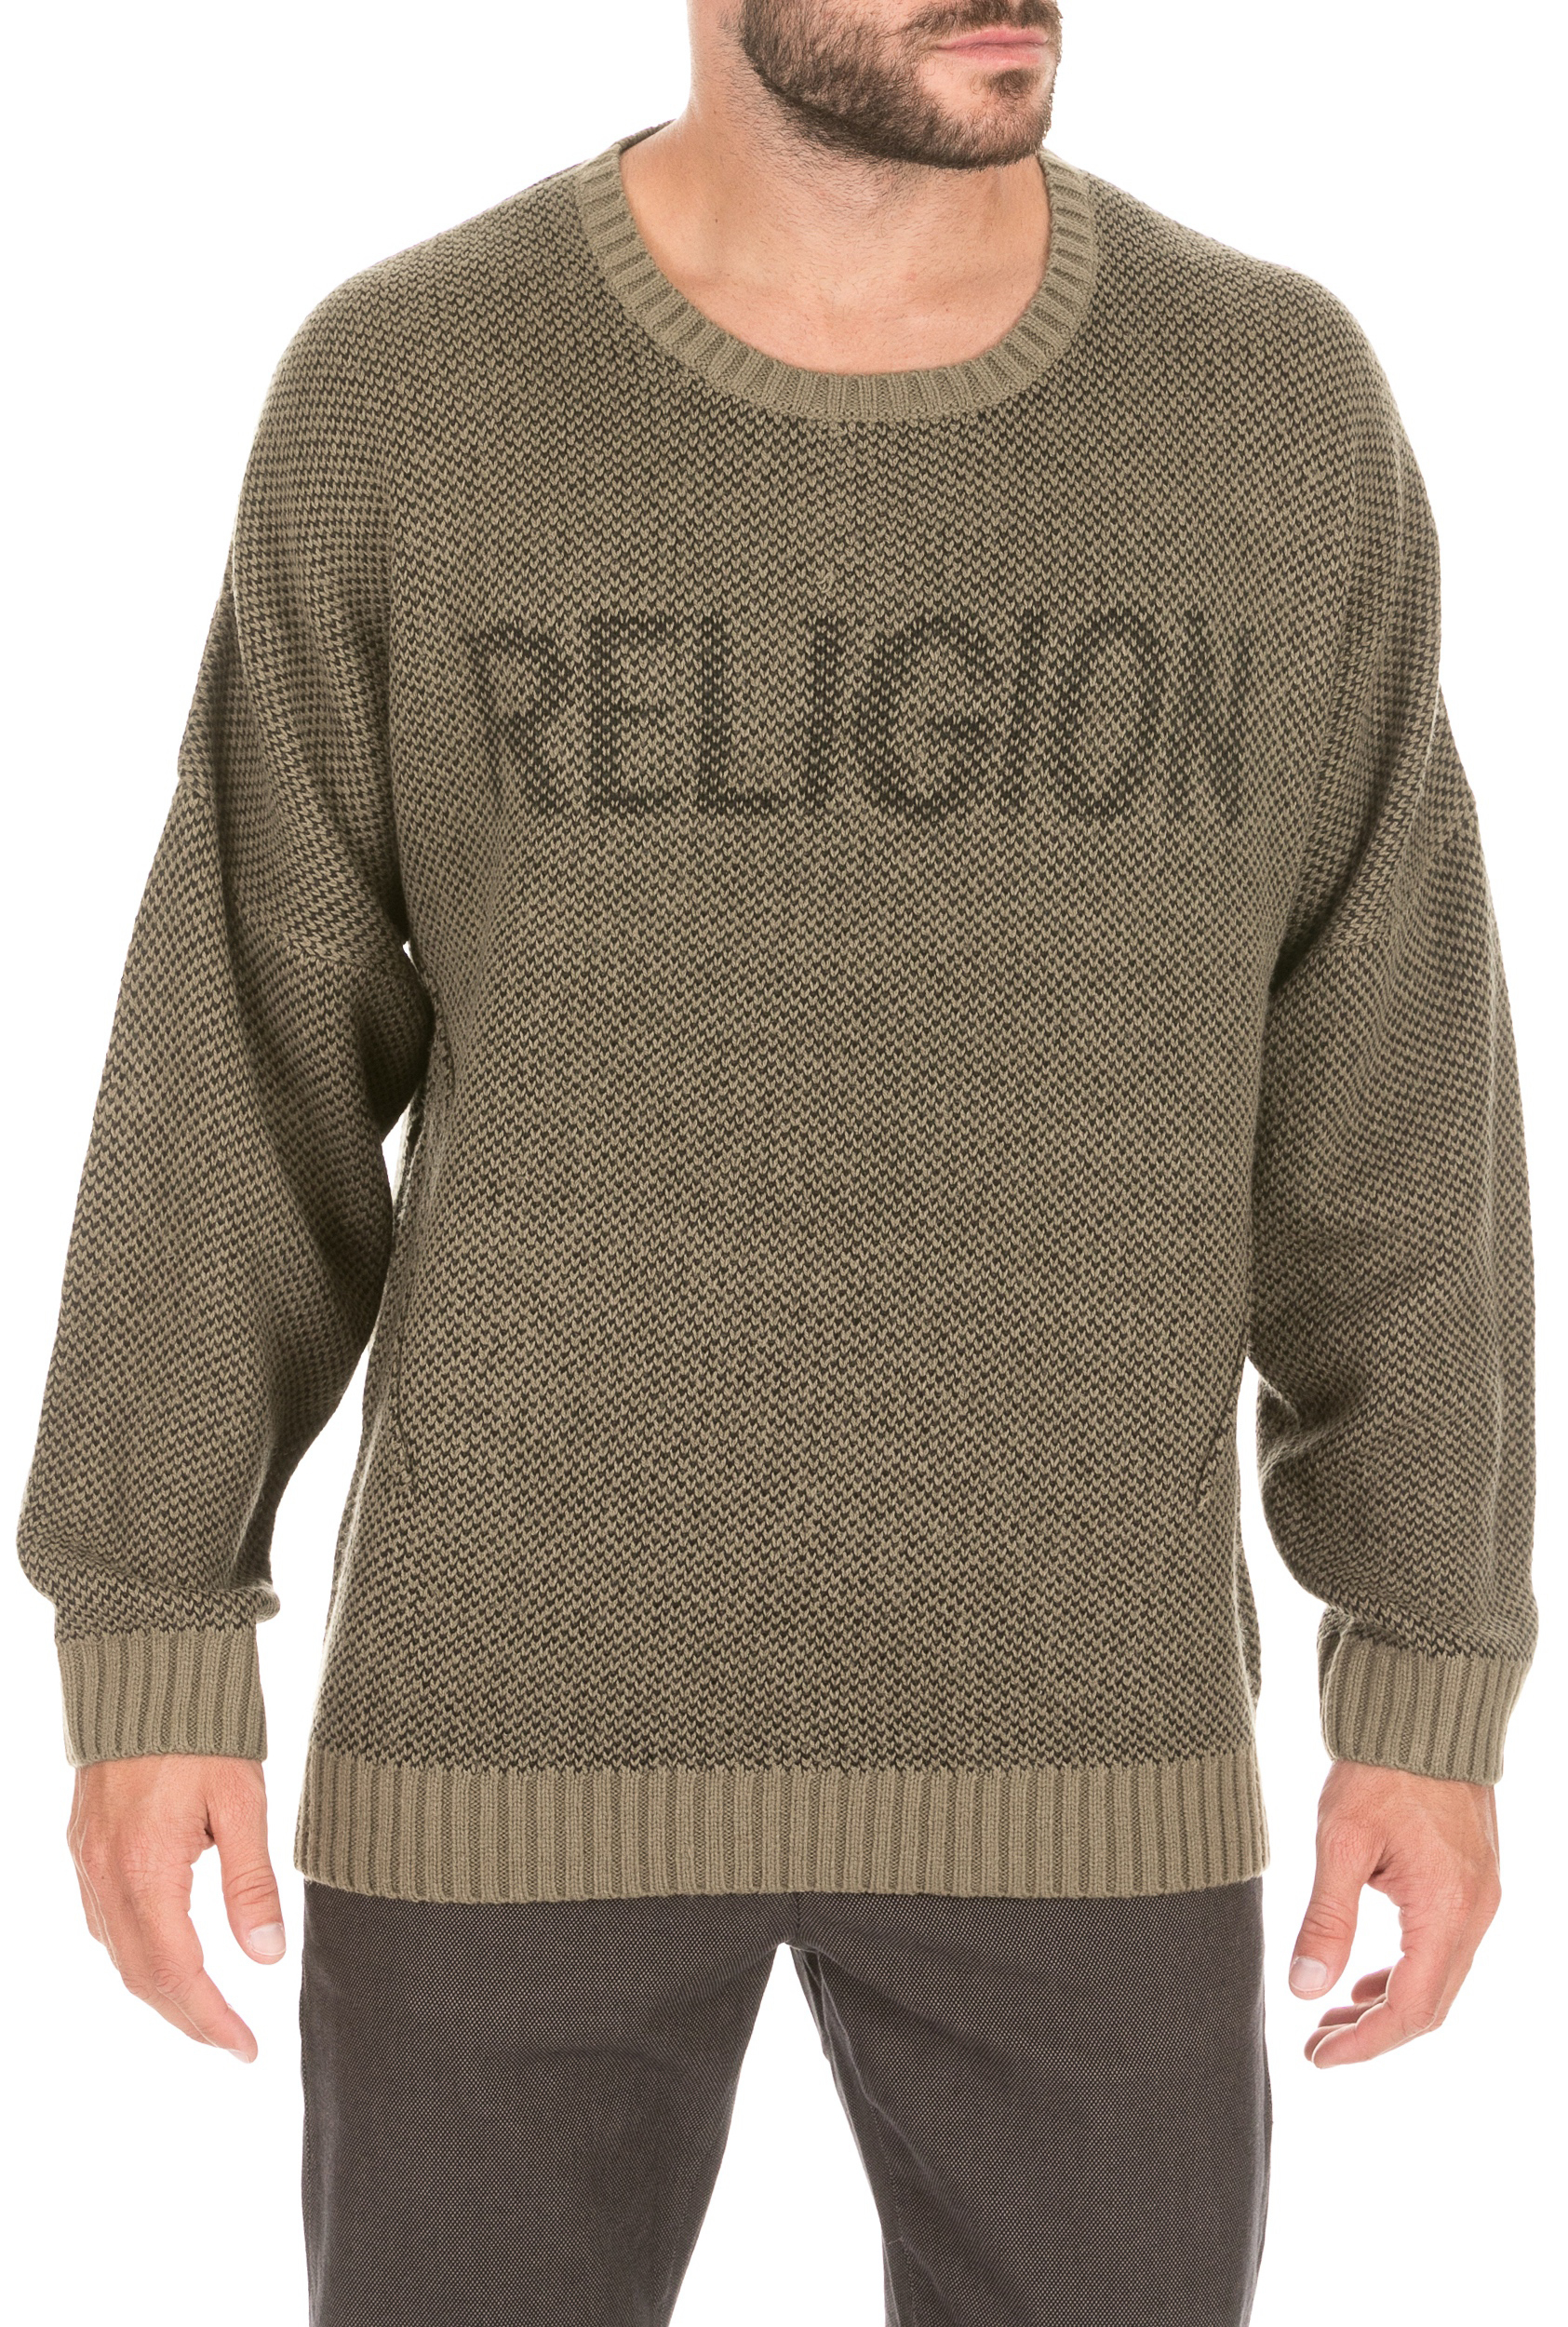 RELIGION Ανδρική πλεκτή μπλούζα RELIGION χακί